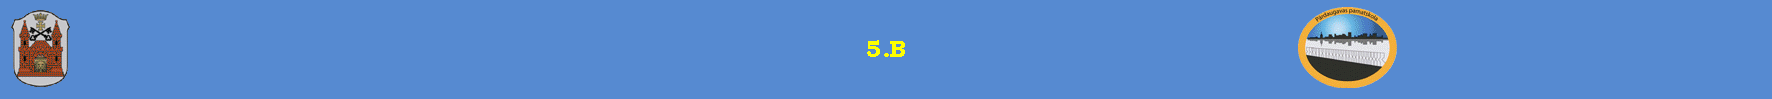 9.B